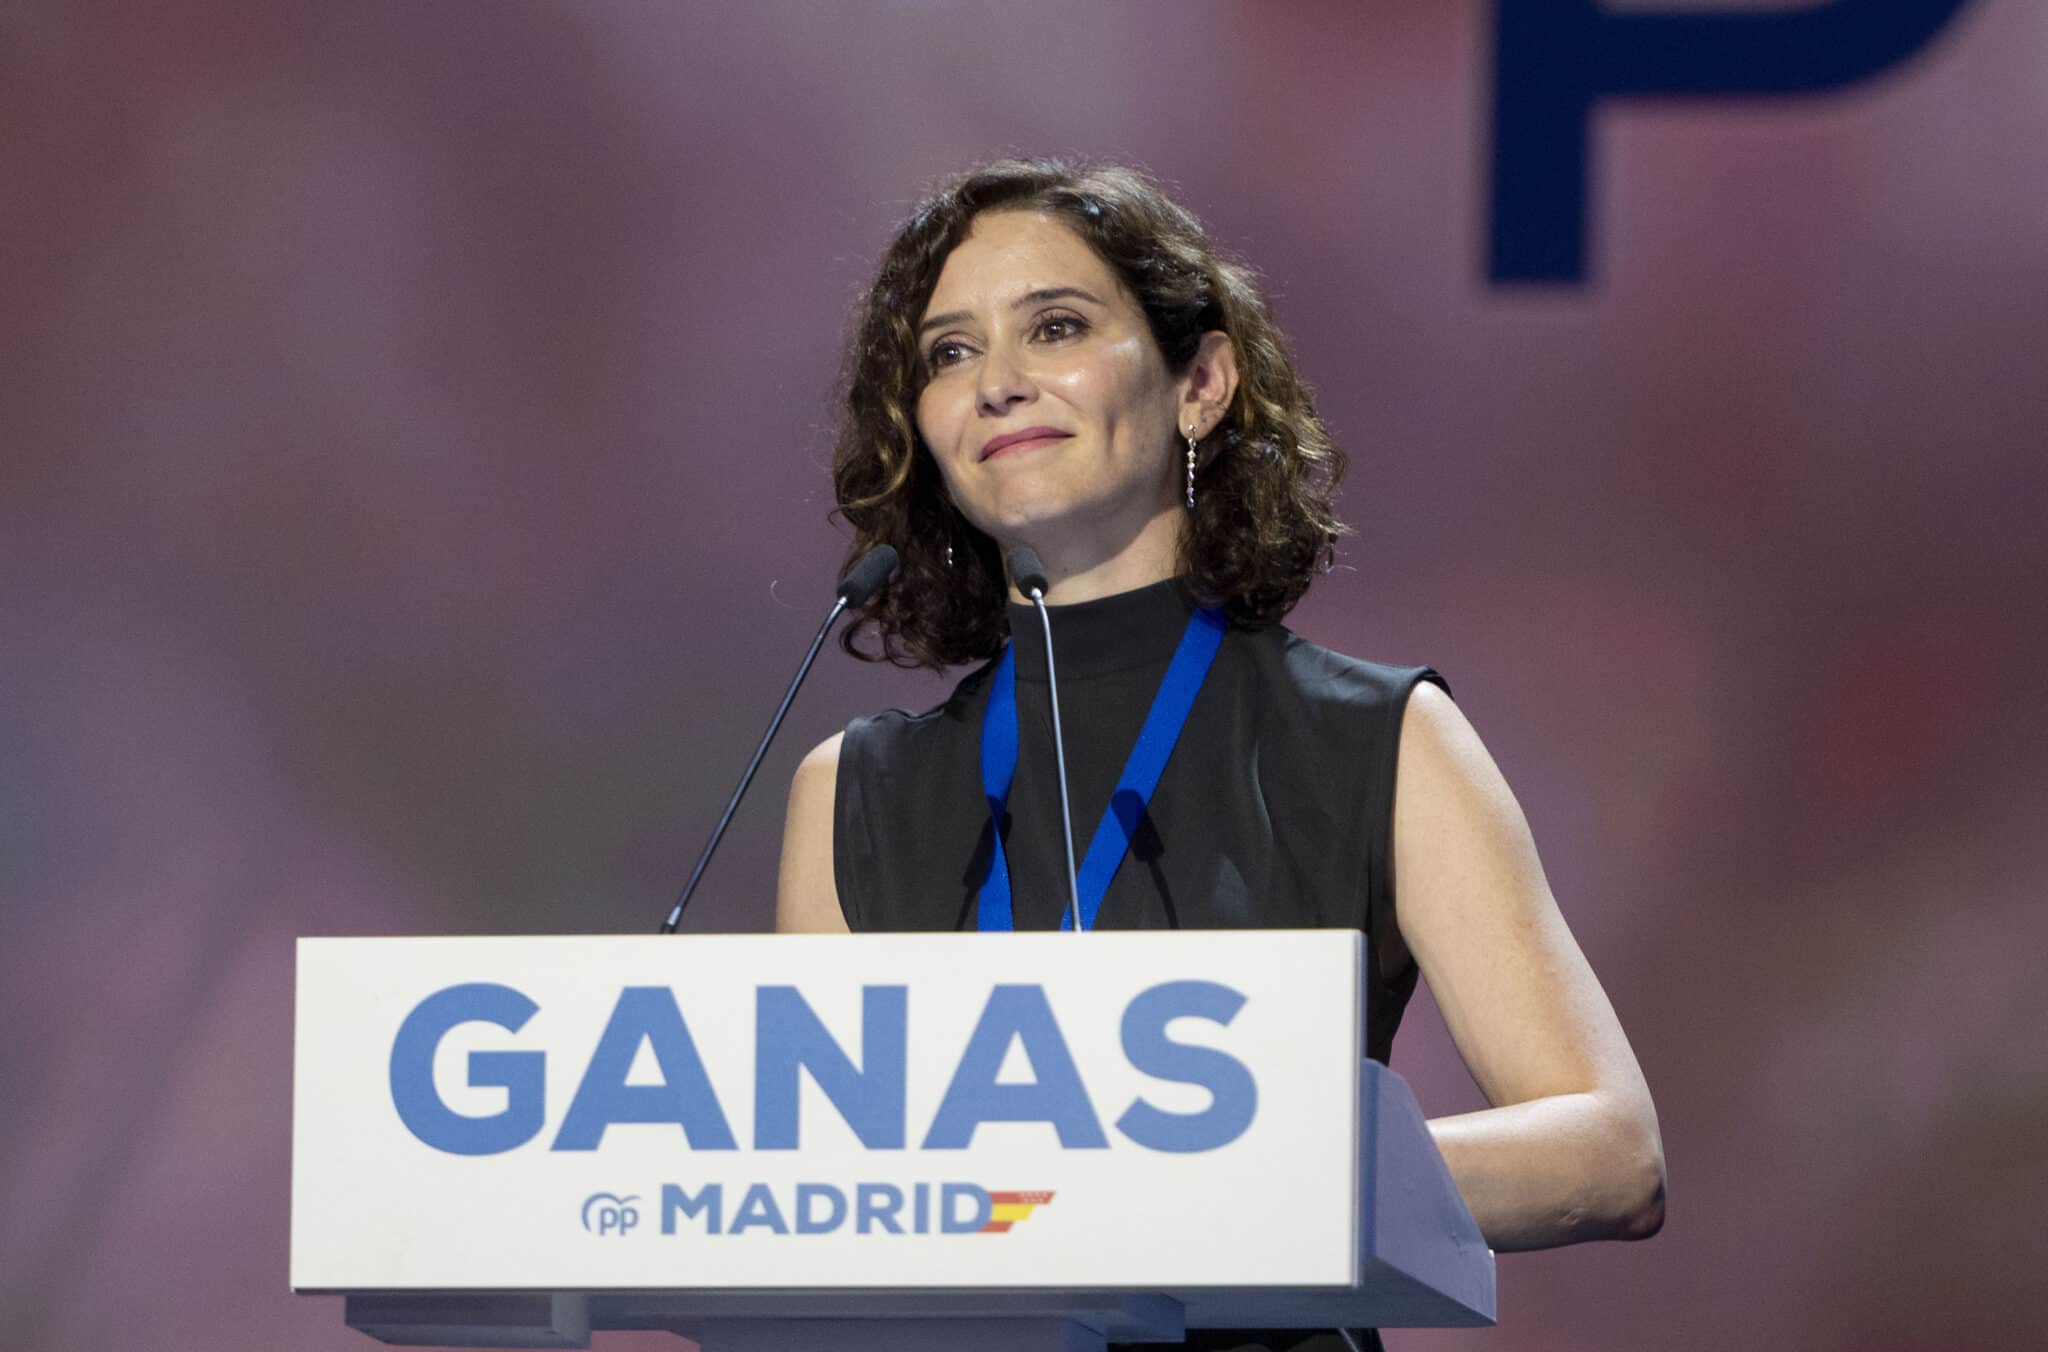 La presidenta de la Comunidad de Madrid, Isabel Díaz Ayuso, interviene durante la primera jornada del XVII Congreso del Partido Popular de Madrid.